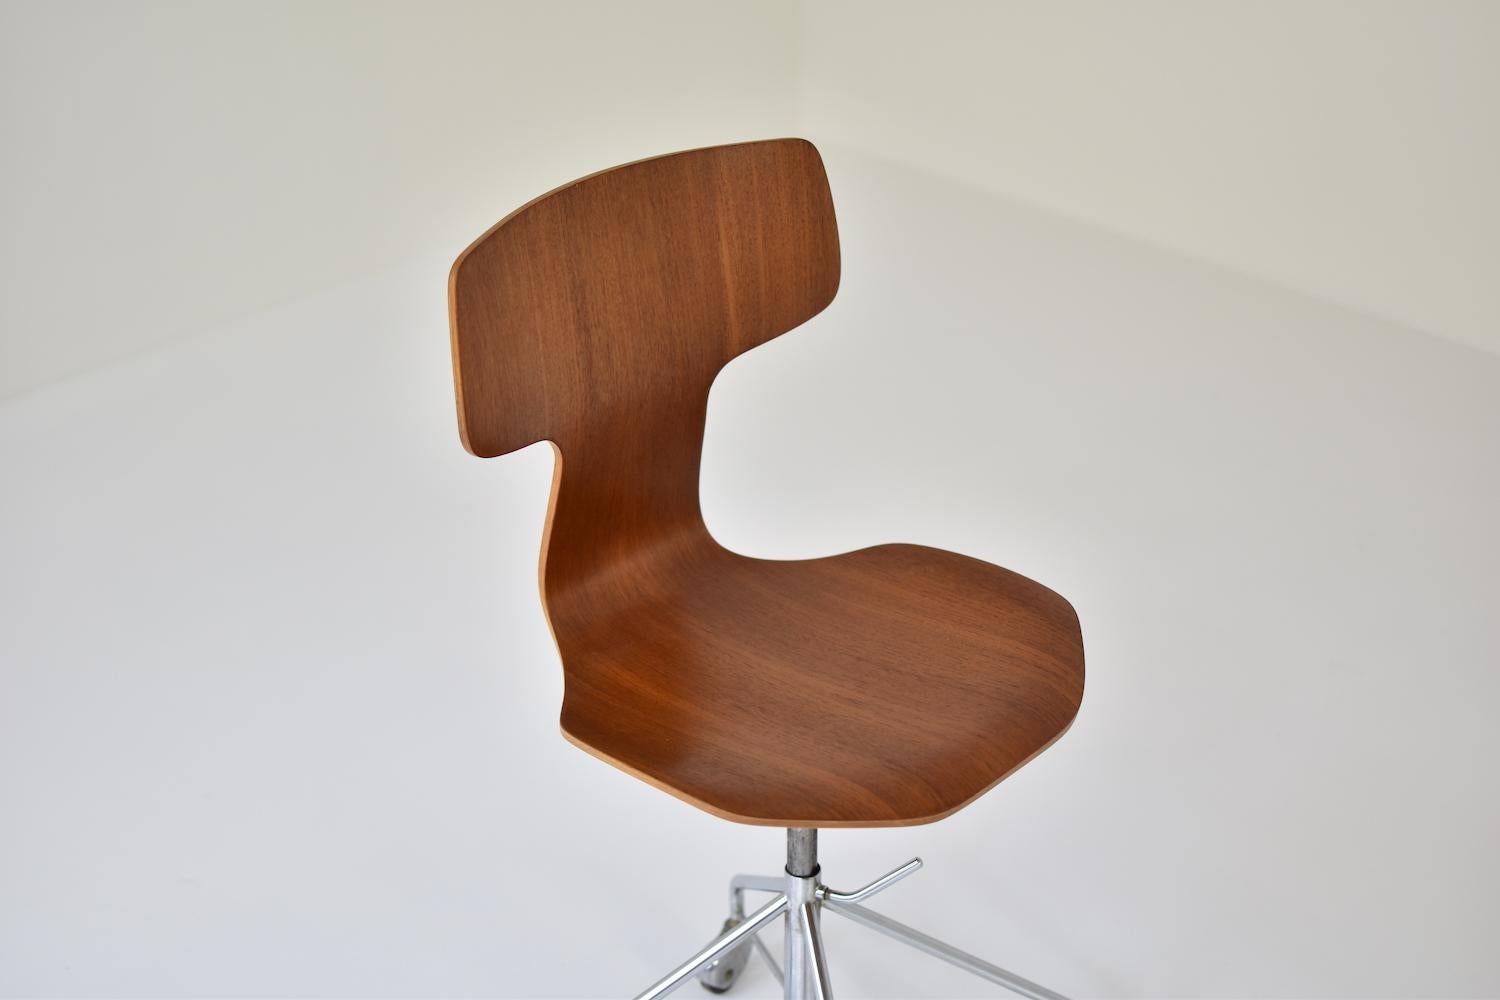 Steel 'Hammer' Desk Chair Designed by Arne Jacobsen for Fritz Hansen, Denmark, 1950s